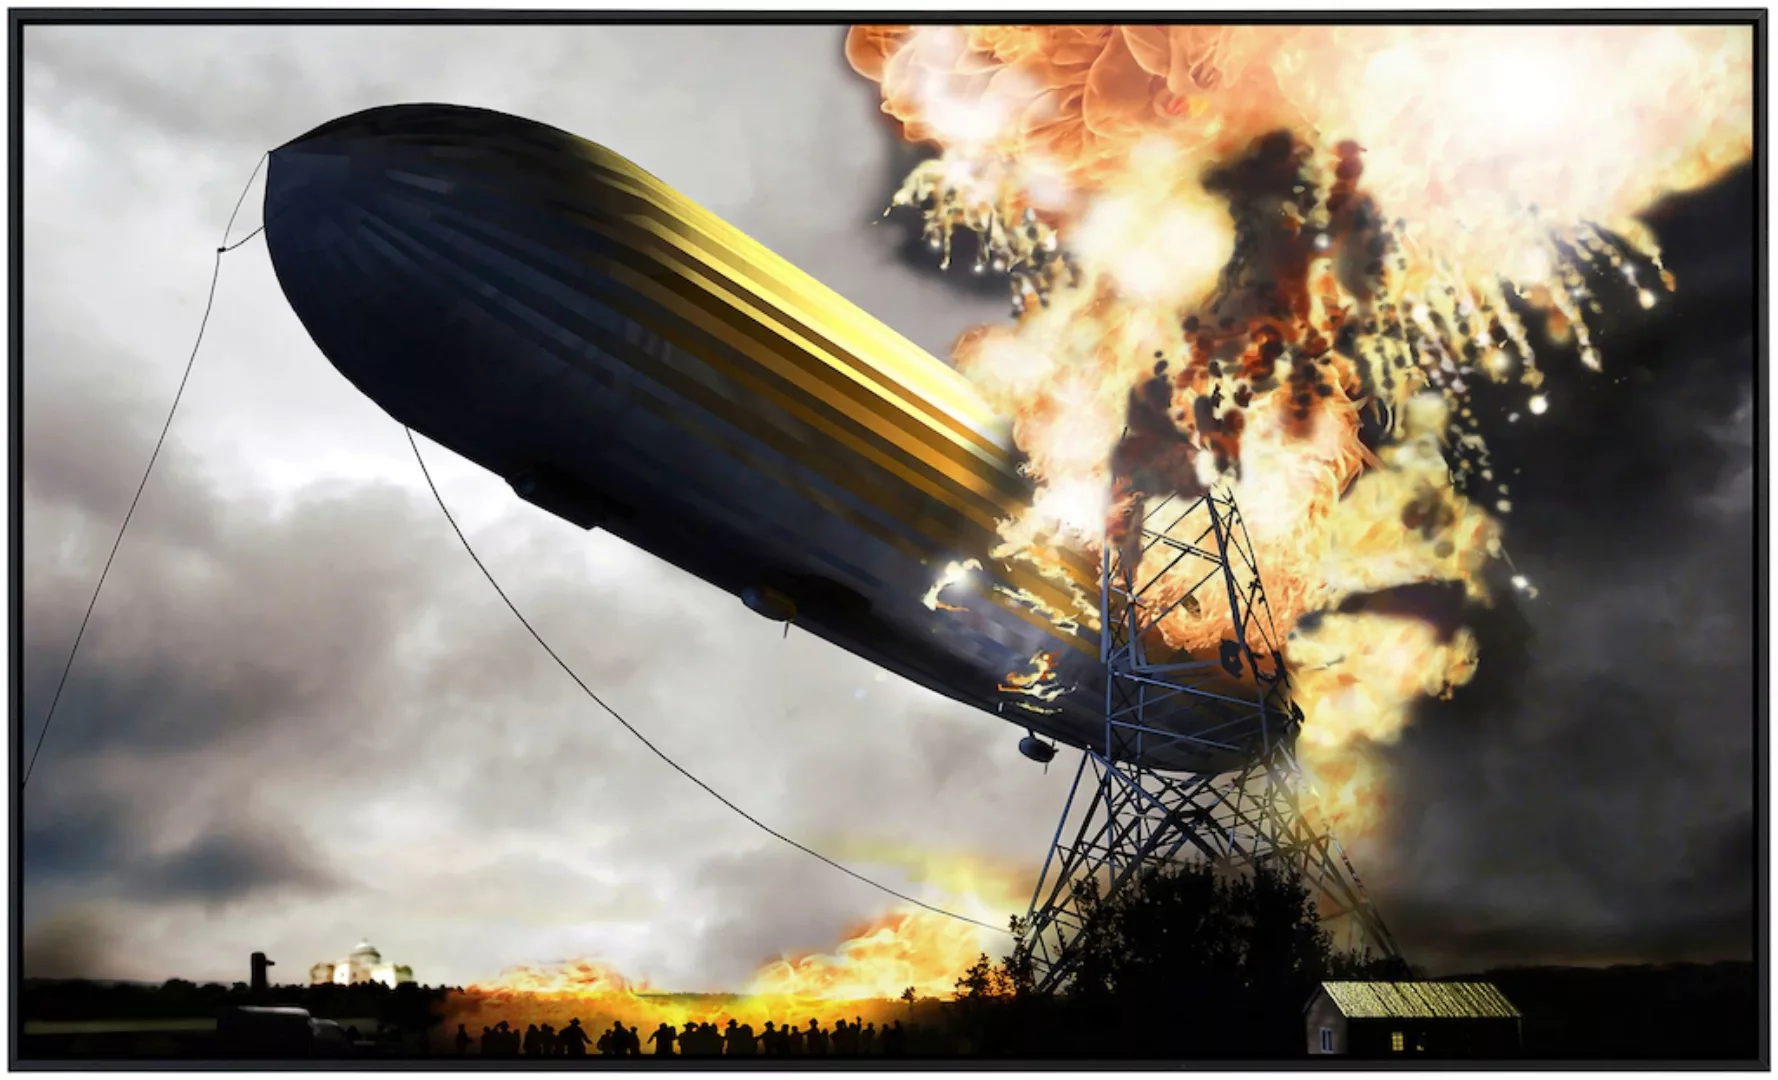 Papermoon Infrarotheizung »Zeppelin mit Explosion«, sehr angenehme Strahlun günstig online kaufen